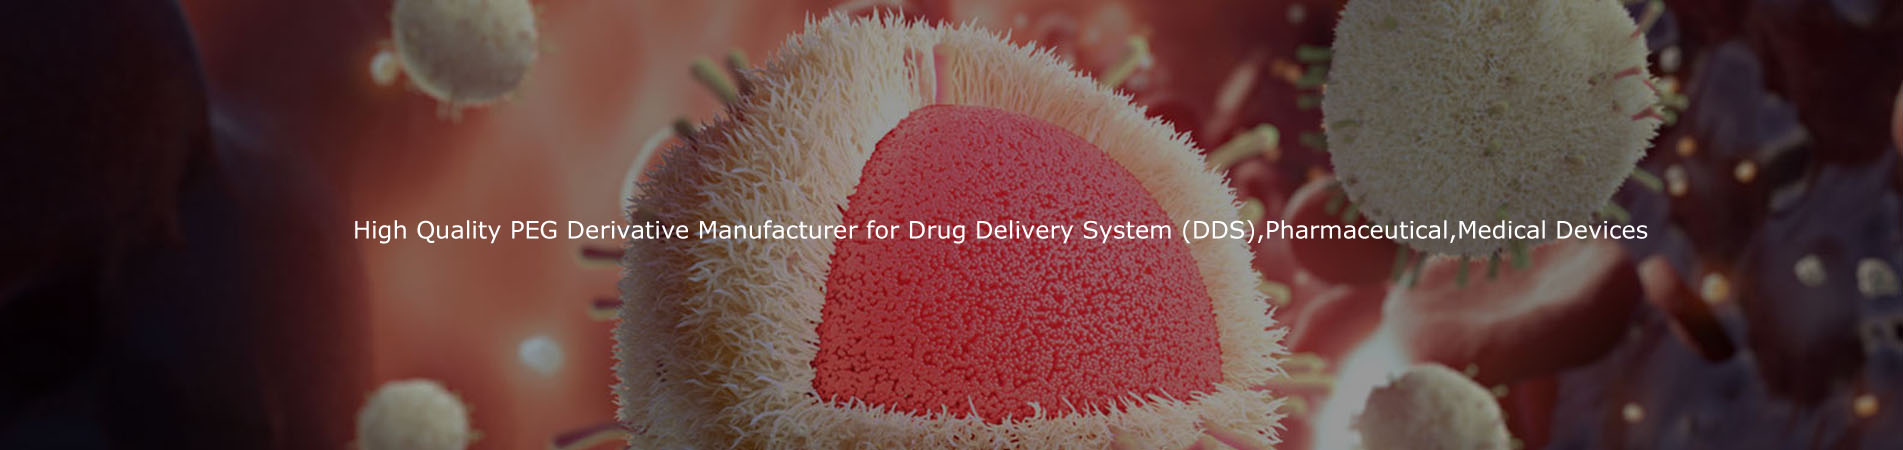 Fabricante de derivados de PEG de alta calidad para el sistema de administración de medicamentos (DDS), productos farmacéuticos, dispositivos médicos